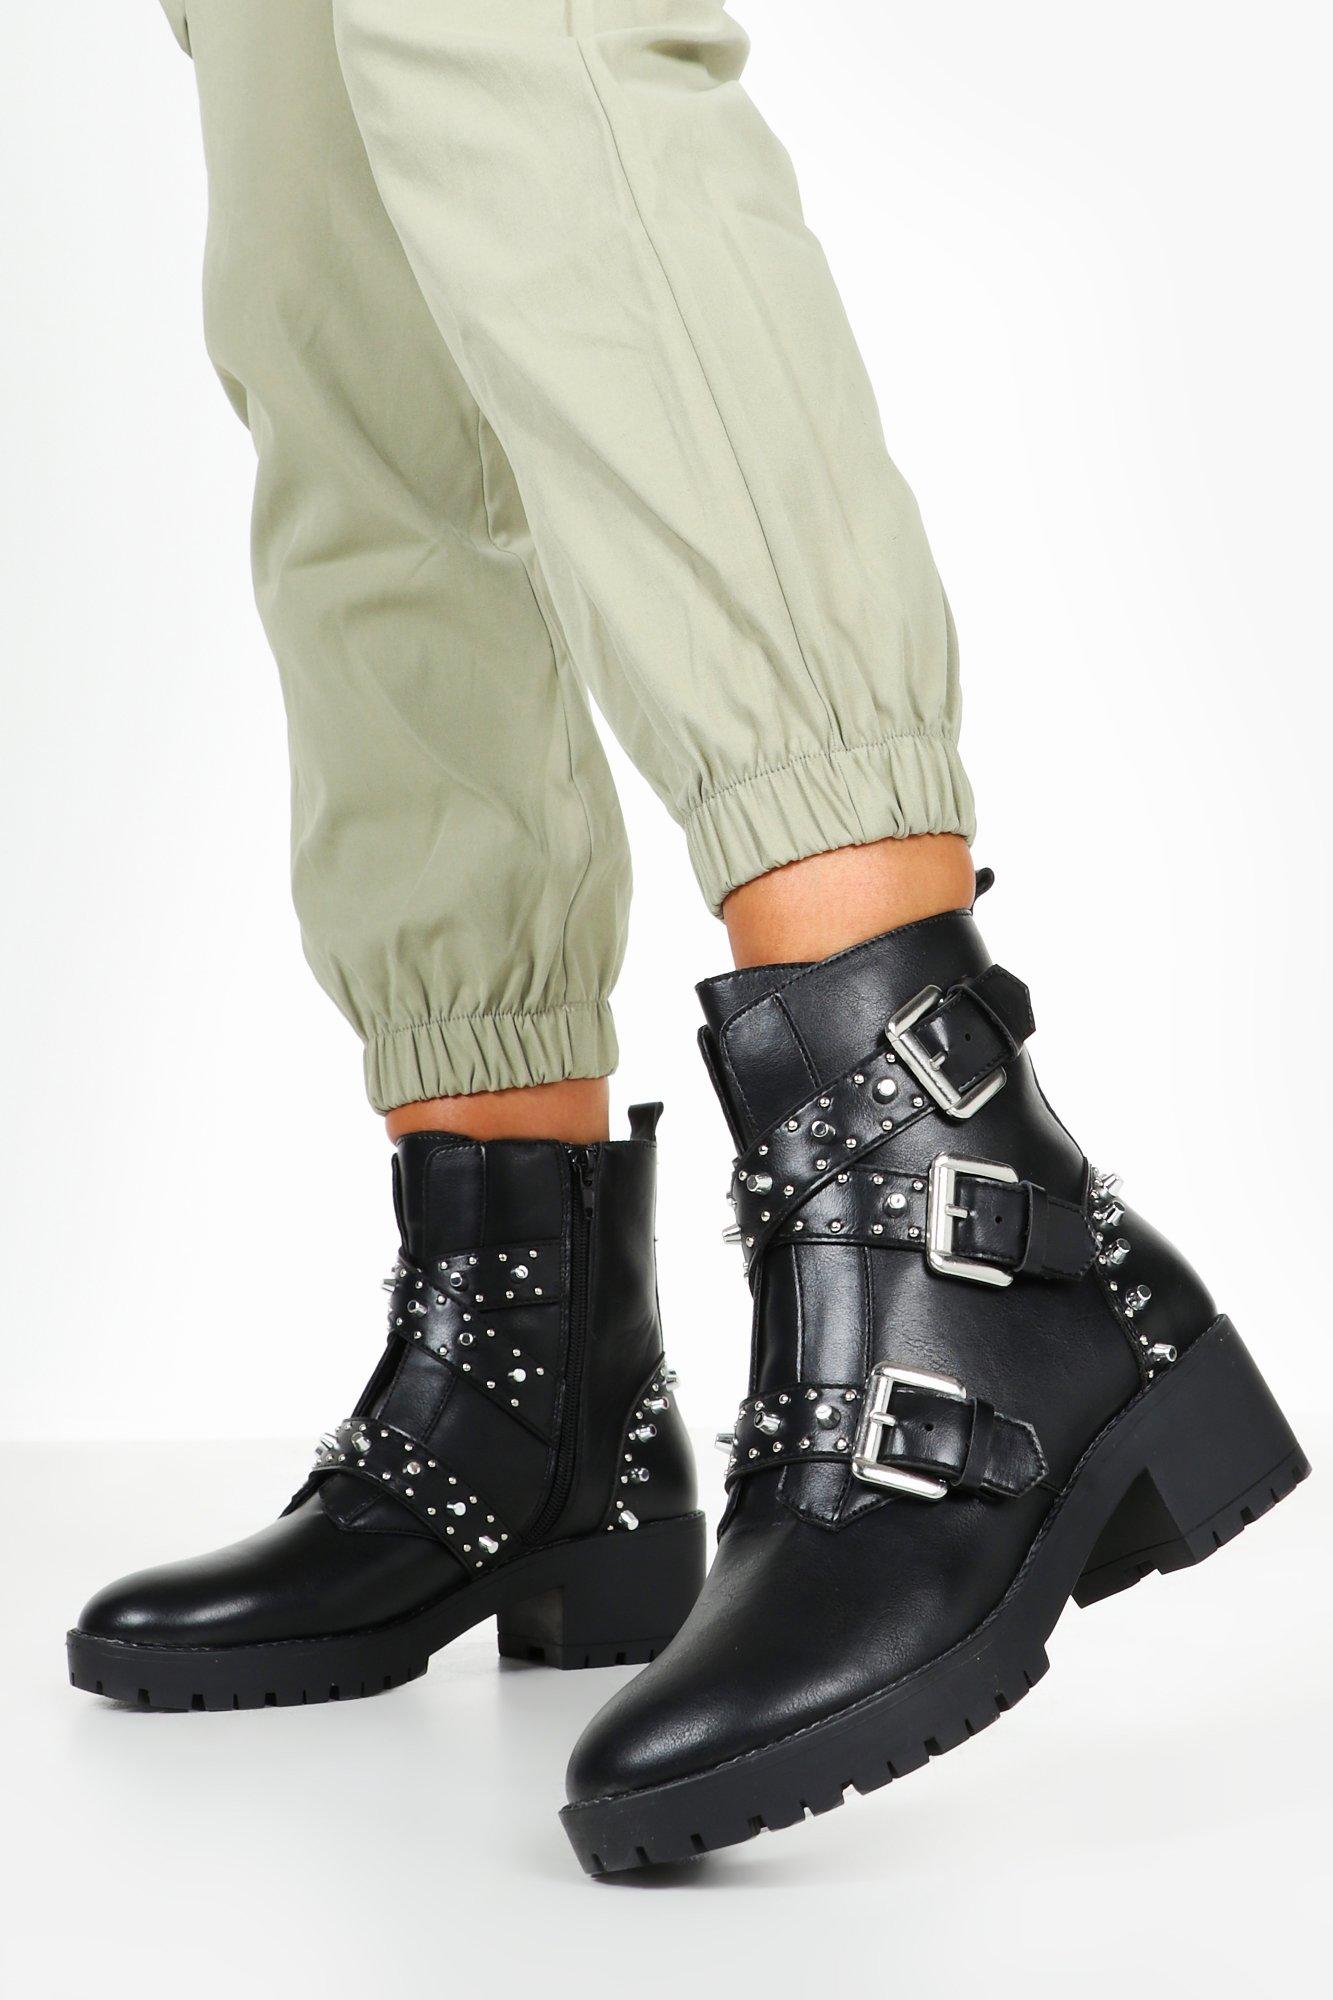 boohoo combat boots